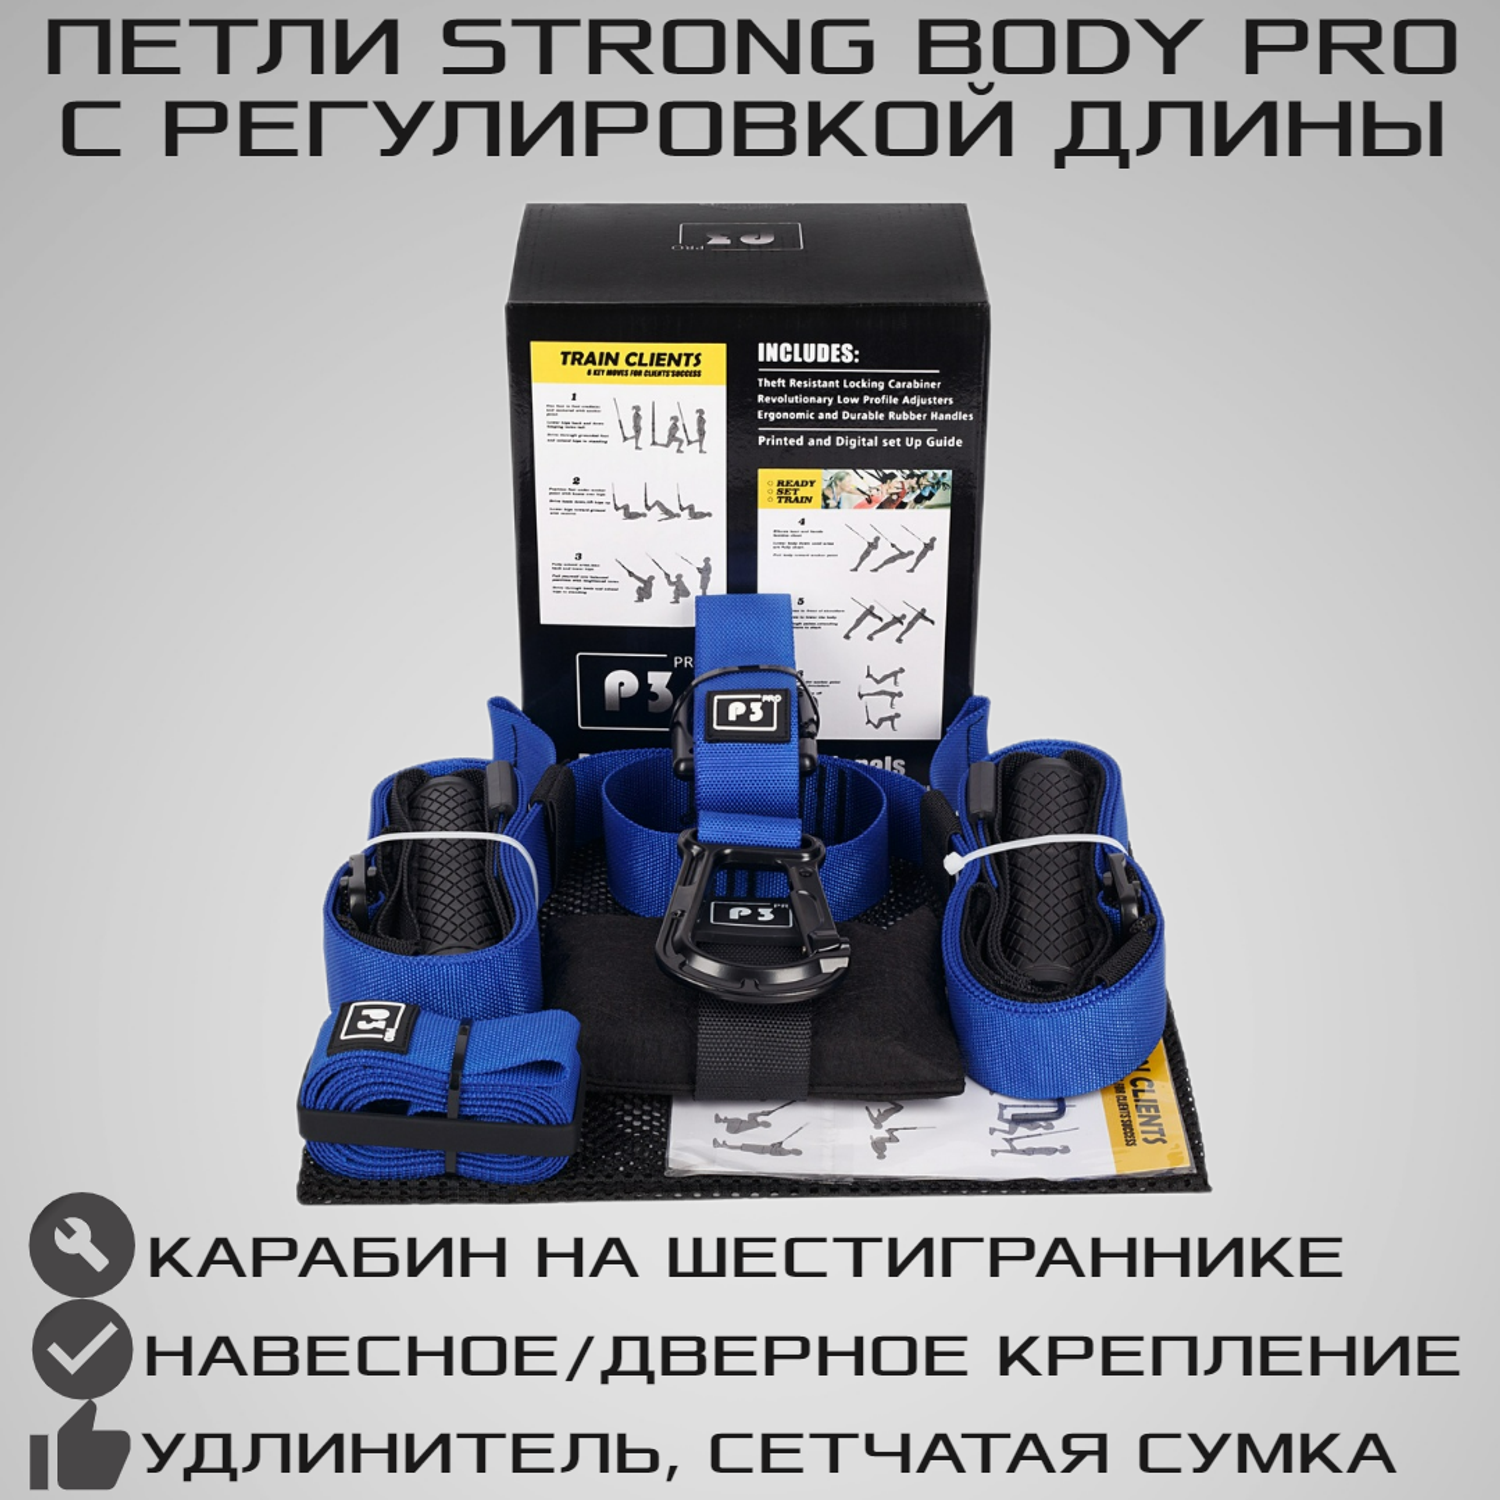 Тренировочные петли STRONG BODY P3 PRO черно-синие подвесные тренировочные петли для фитнеса - фото 1